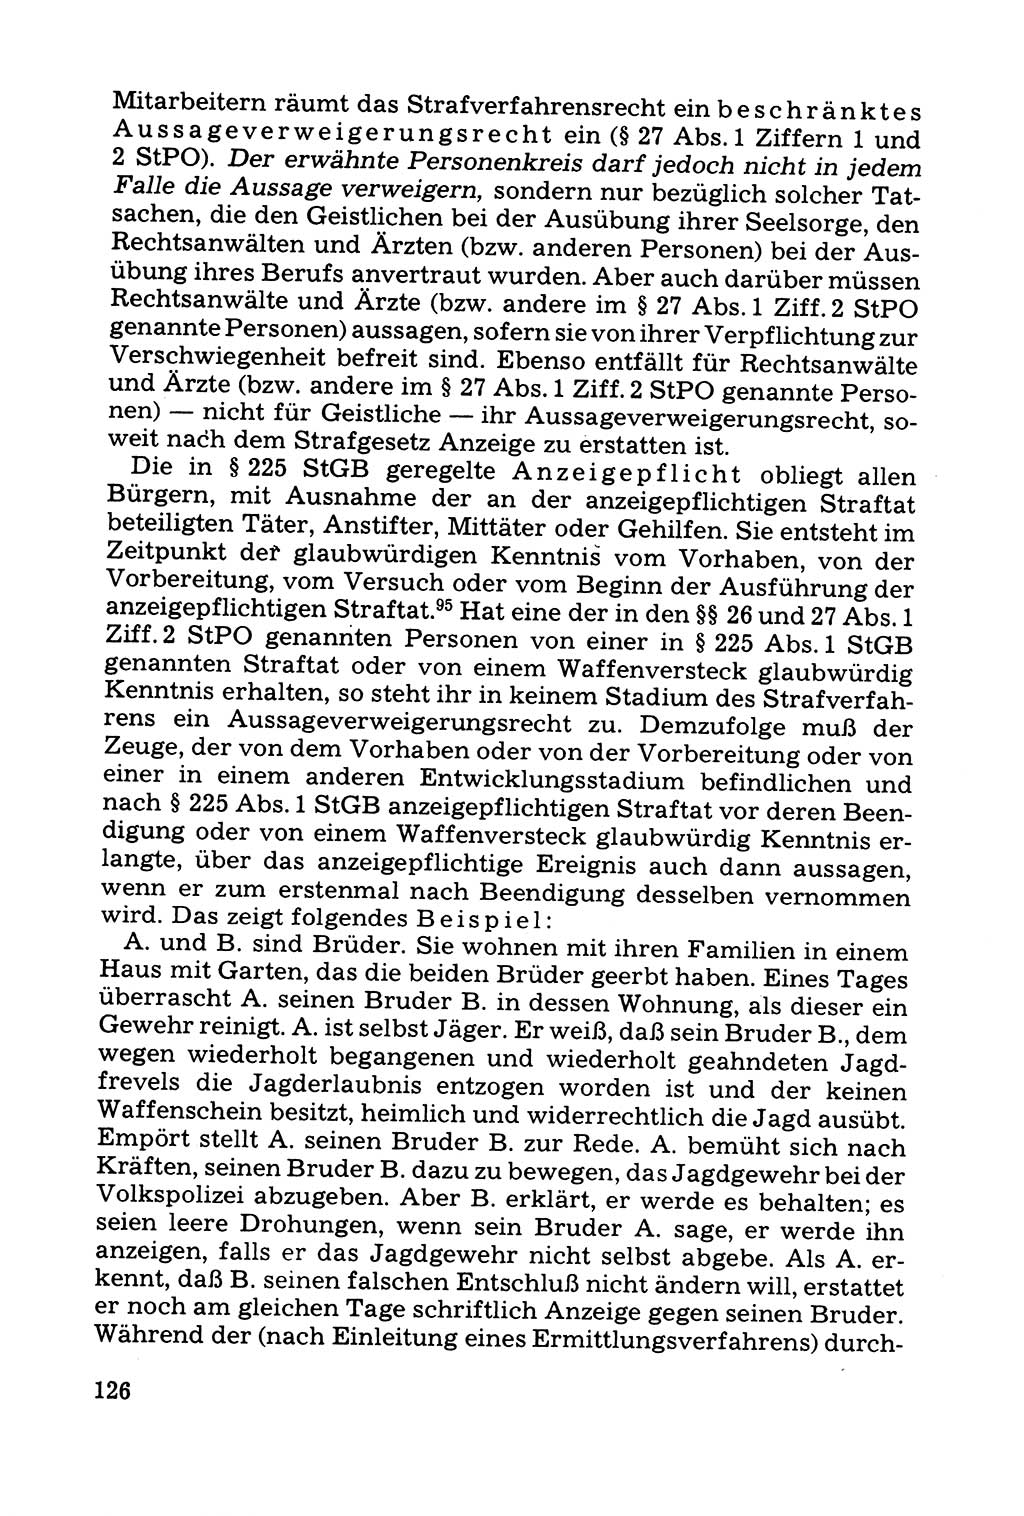 Grundfragen der Beweisführung im Ermittlungsverfahren [Deutsche Demokratische Republik (DDR)] 1980, Seite 126 (Bws.-Fhrg. EV DDR 1980, S. 126)